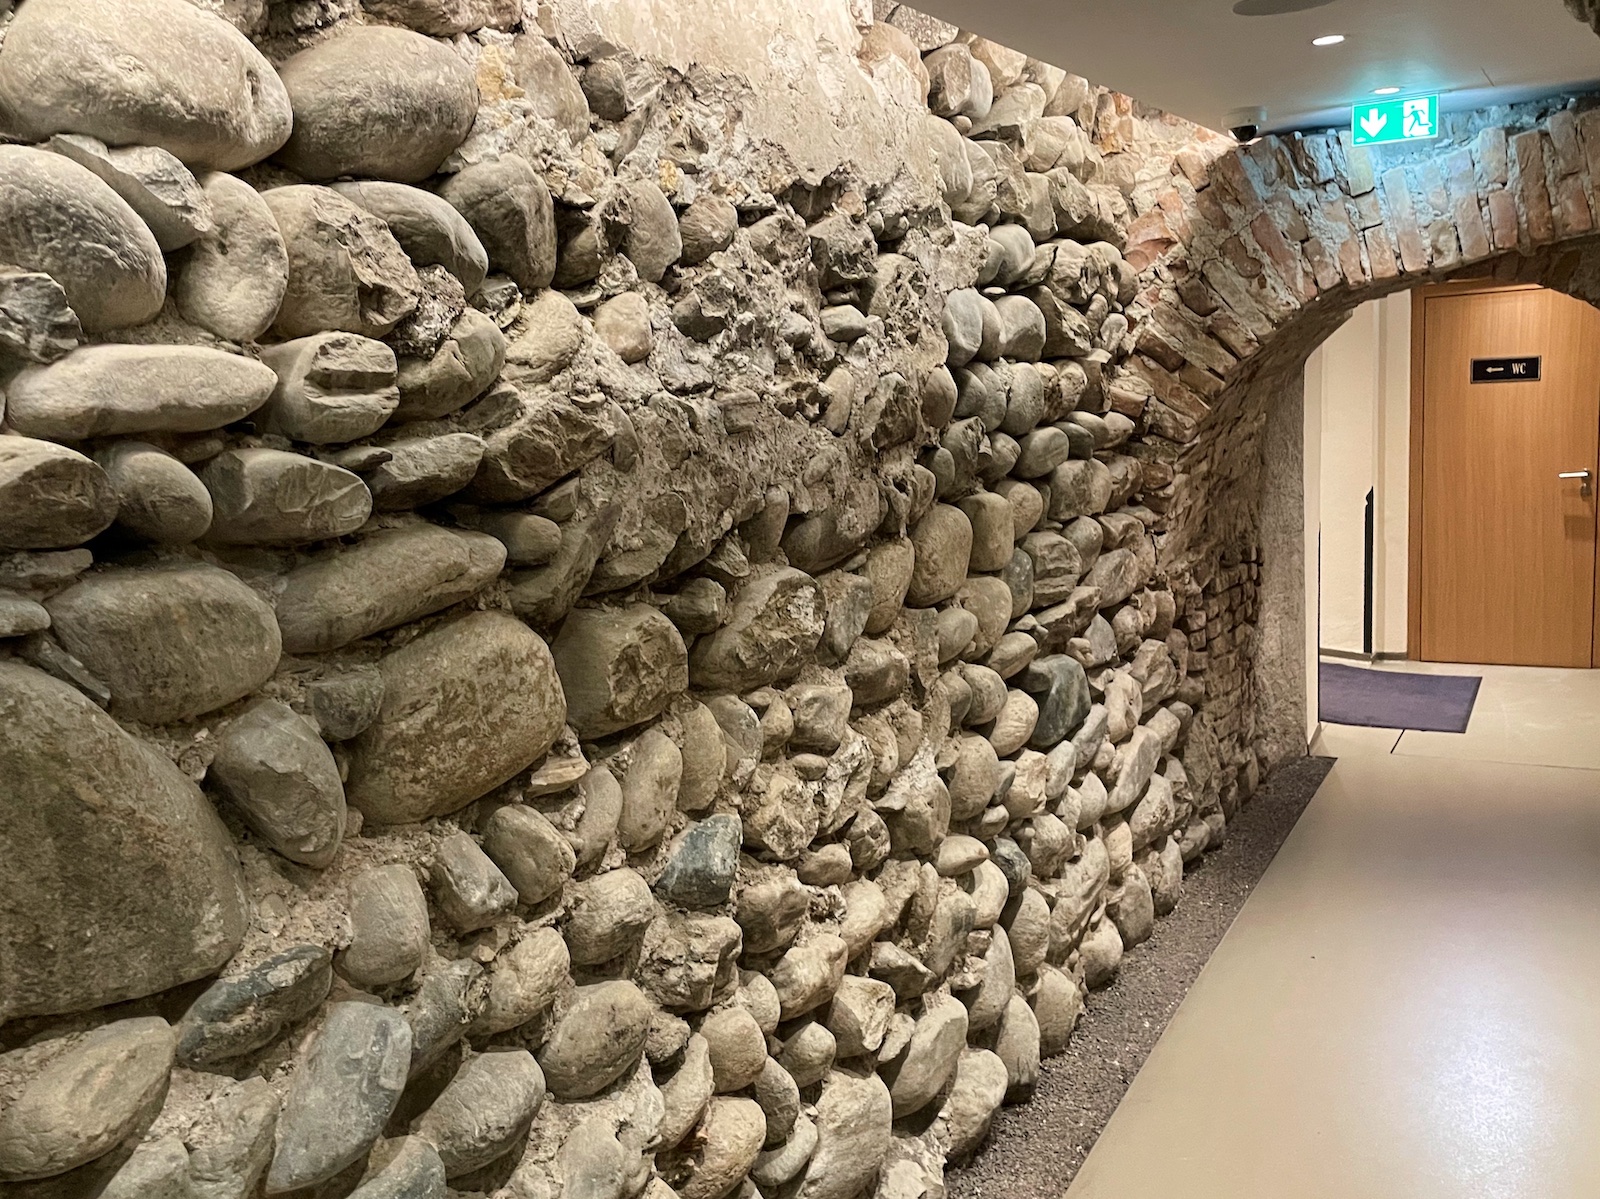 De oude stenen muur in de gang naar de toiletten, die ooit de fundering was van het nonnenklooster Stiftskeller.